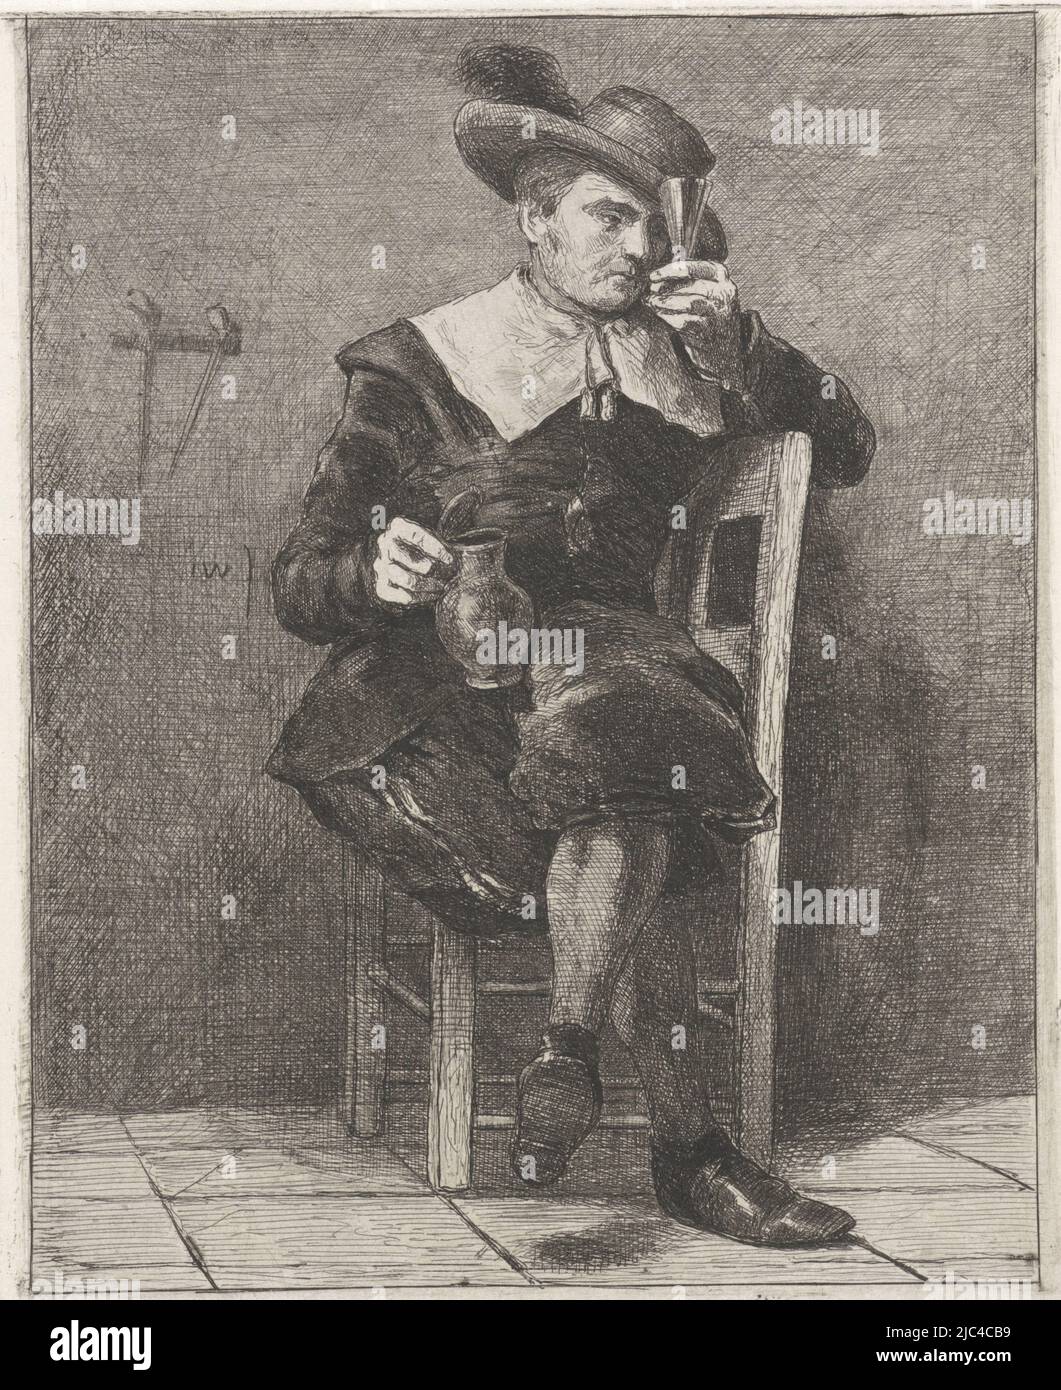 Sur une chaise se trouve un homme dans la robe du XVIIe siècle. Il porte un chapeau avec une plume sur sa tête. Dans ses mains, il tient une verseuse et un verre. Sur le mur derrière lui se trouvent quelques pipes., homme avec pichet et verre sur une chaise, imprimeur: Jan Weissenbruch, (mentionné sur l'objet), la Haye, (éventuellement), 1837 - 1880, papier, gravure, h 147 mm × l 123 mm Banque D'Images